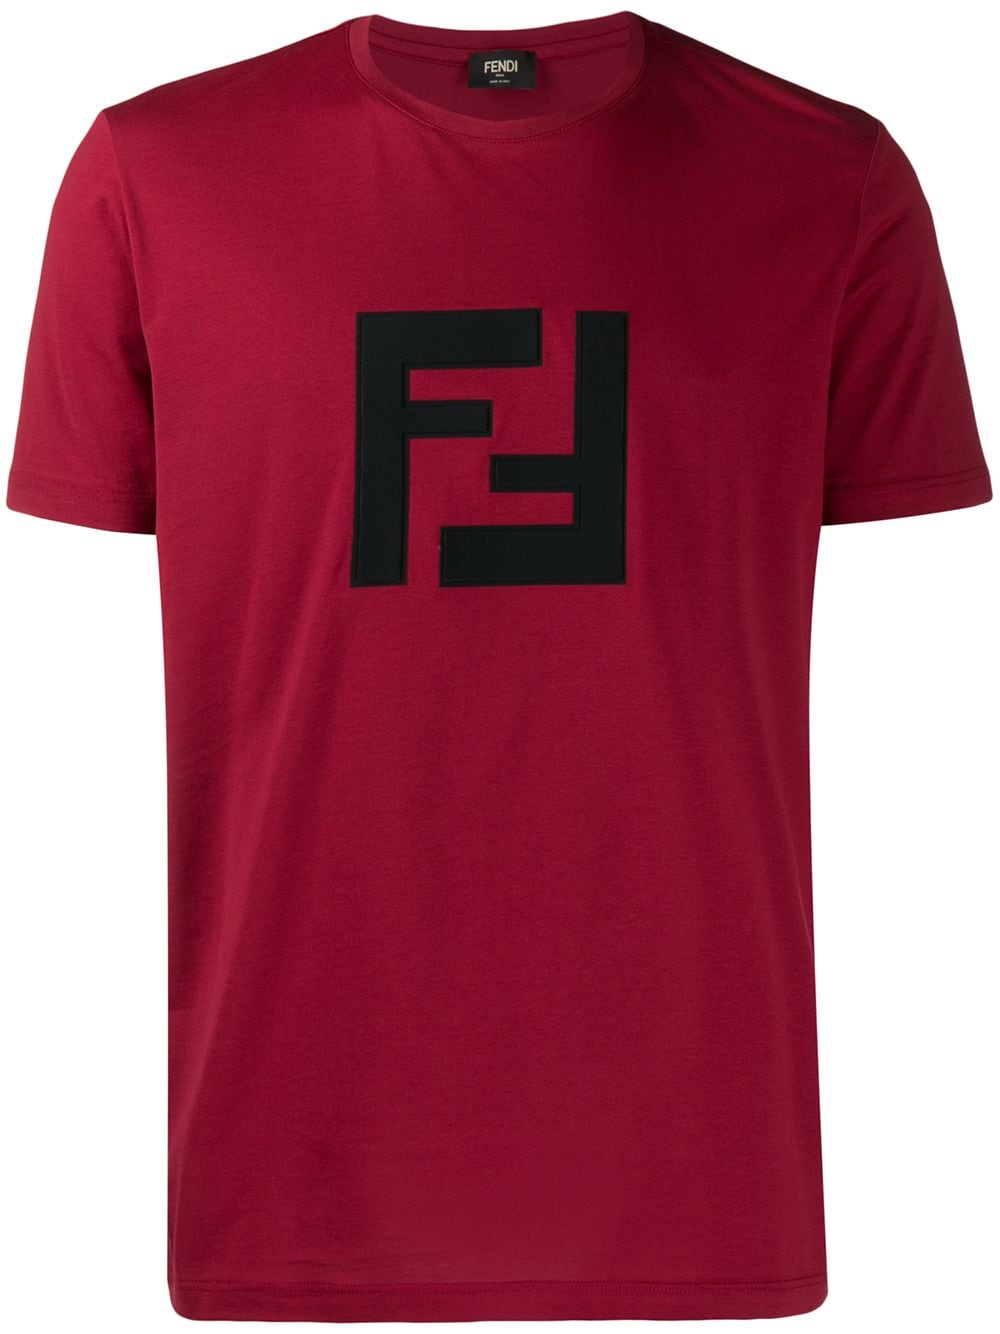 фото Fendi футболка с логотипом ff